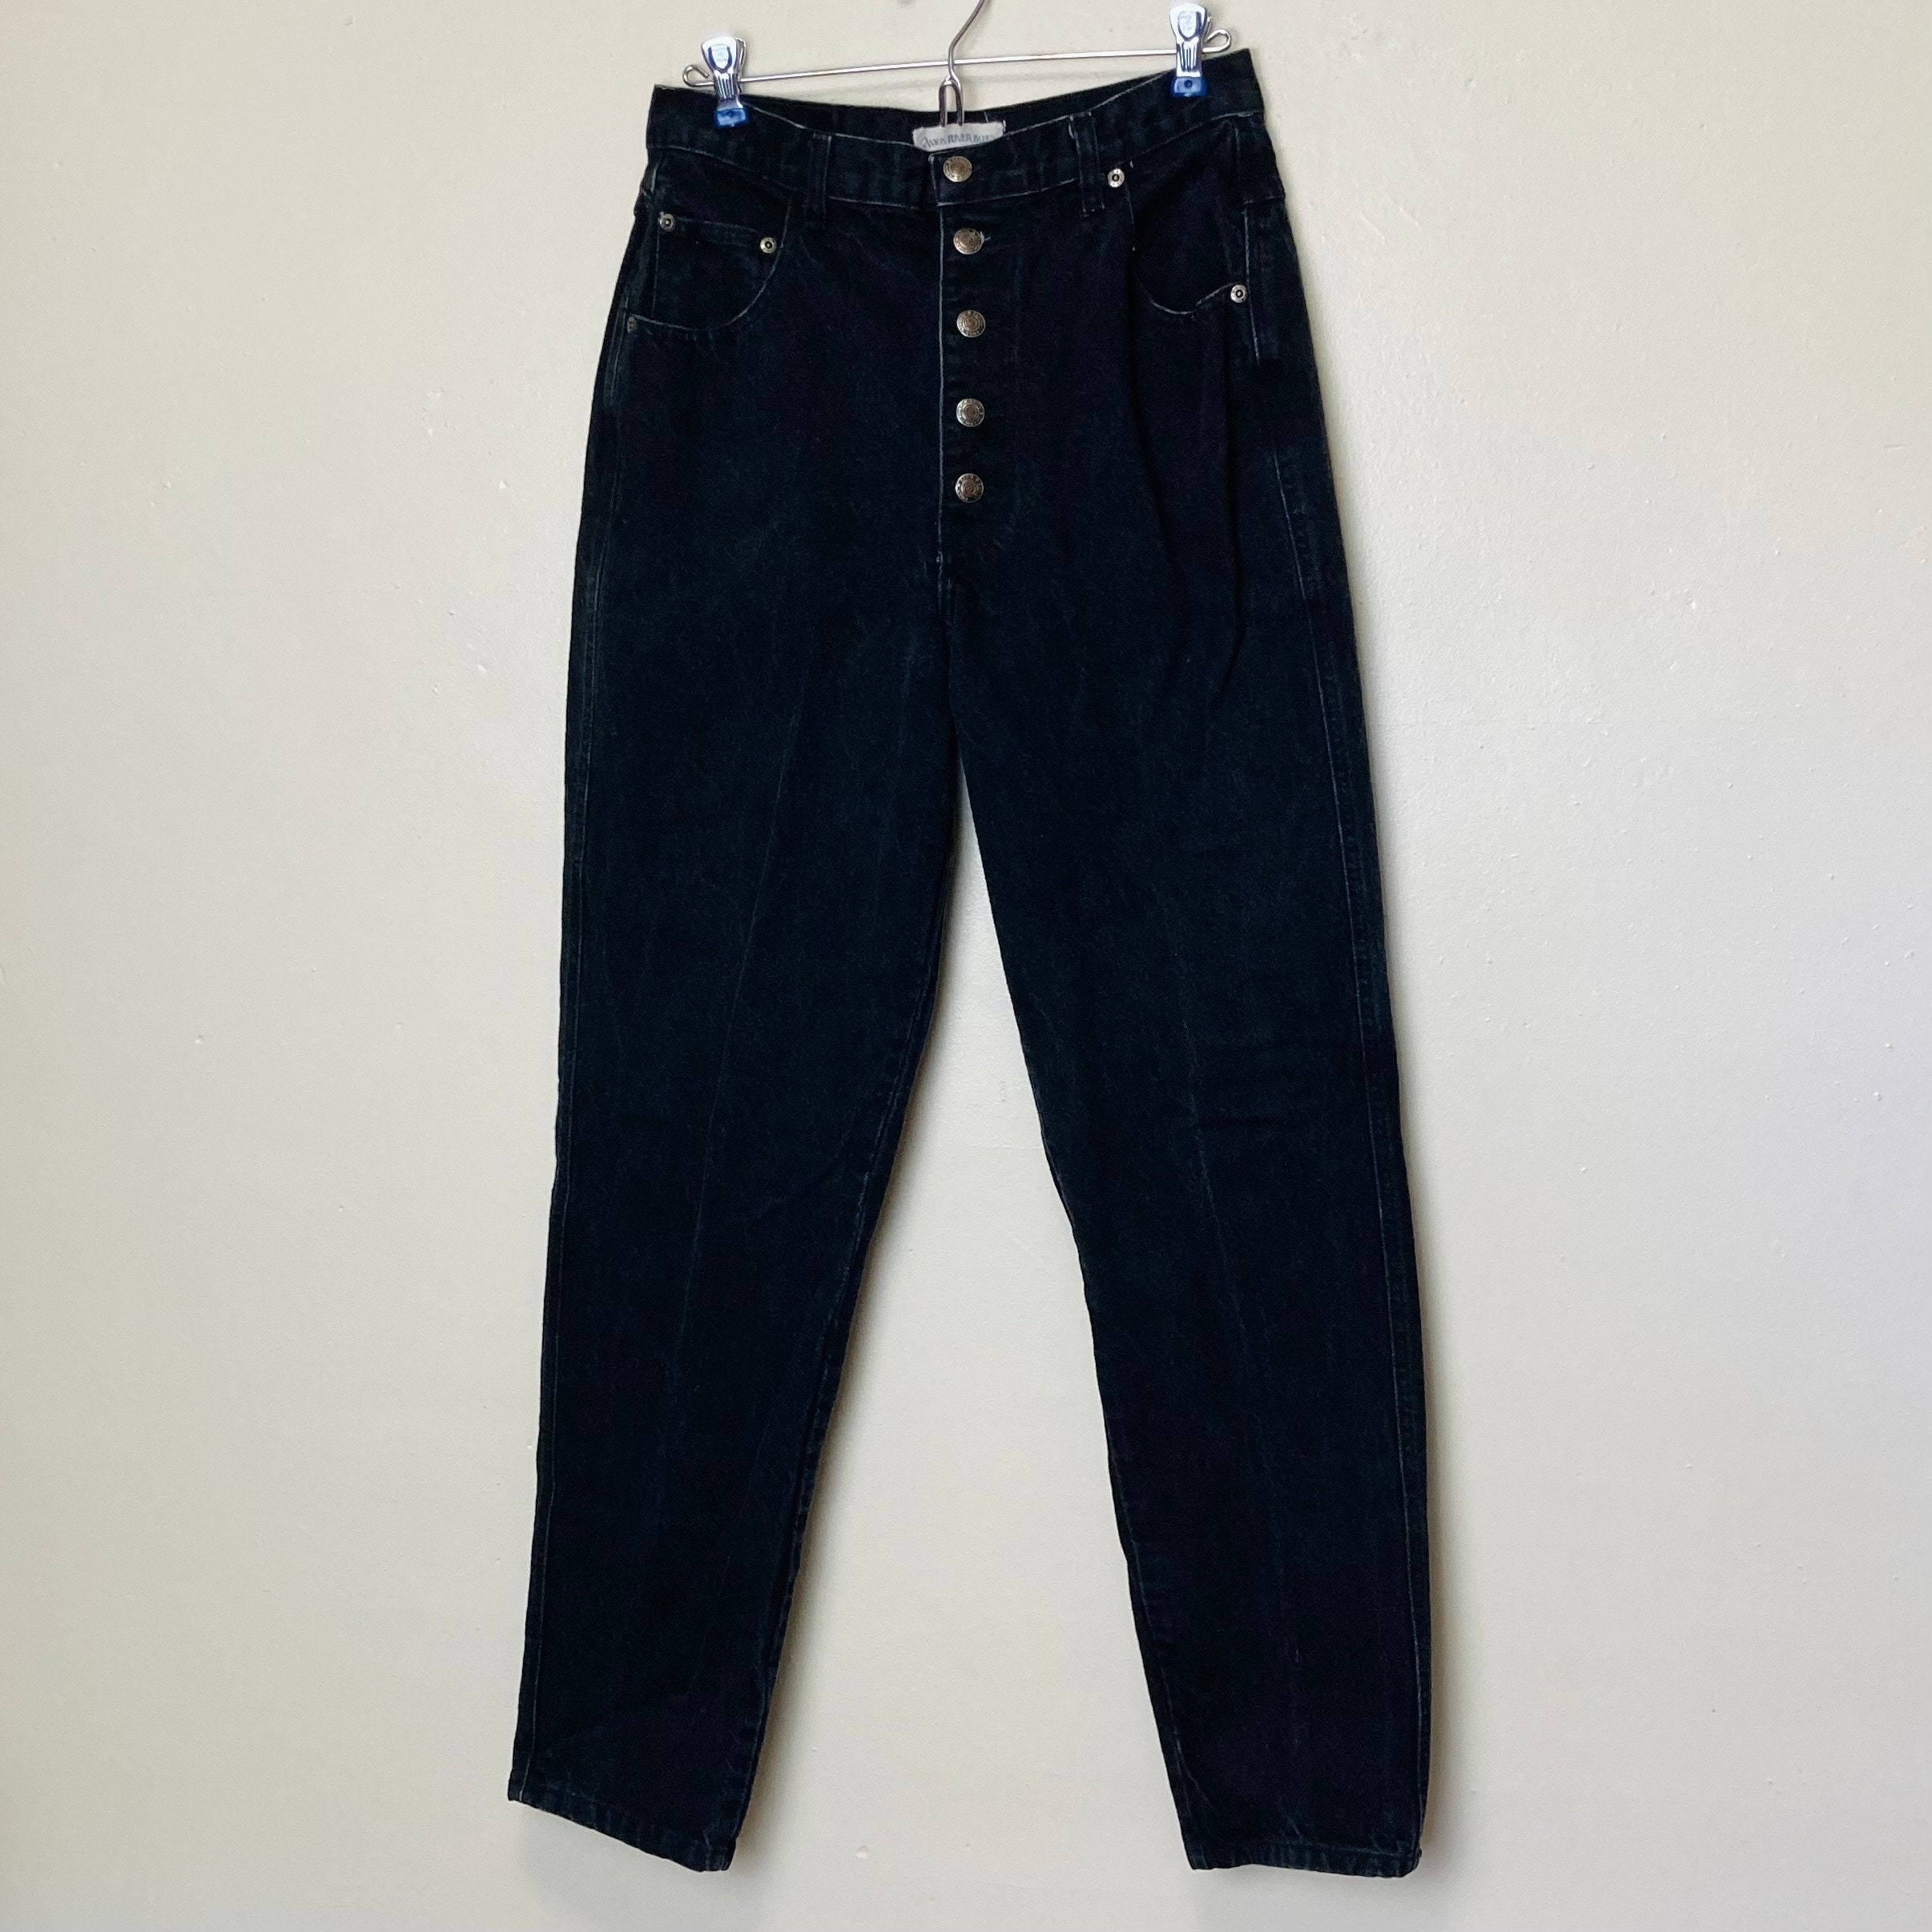 Jeans Waist Button Buckle-2pcs Waistband Tightener Adjuster Hook